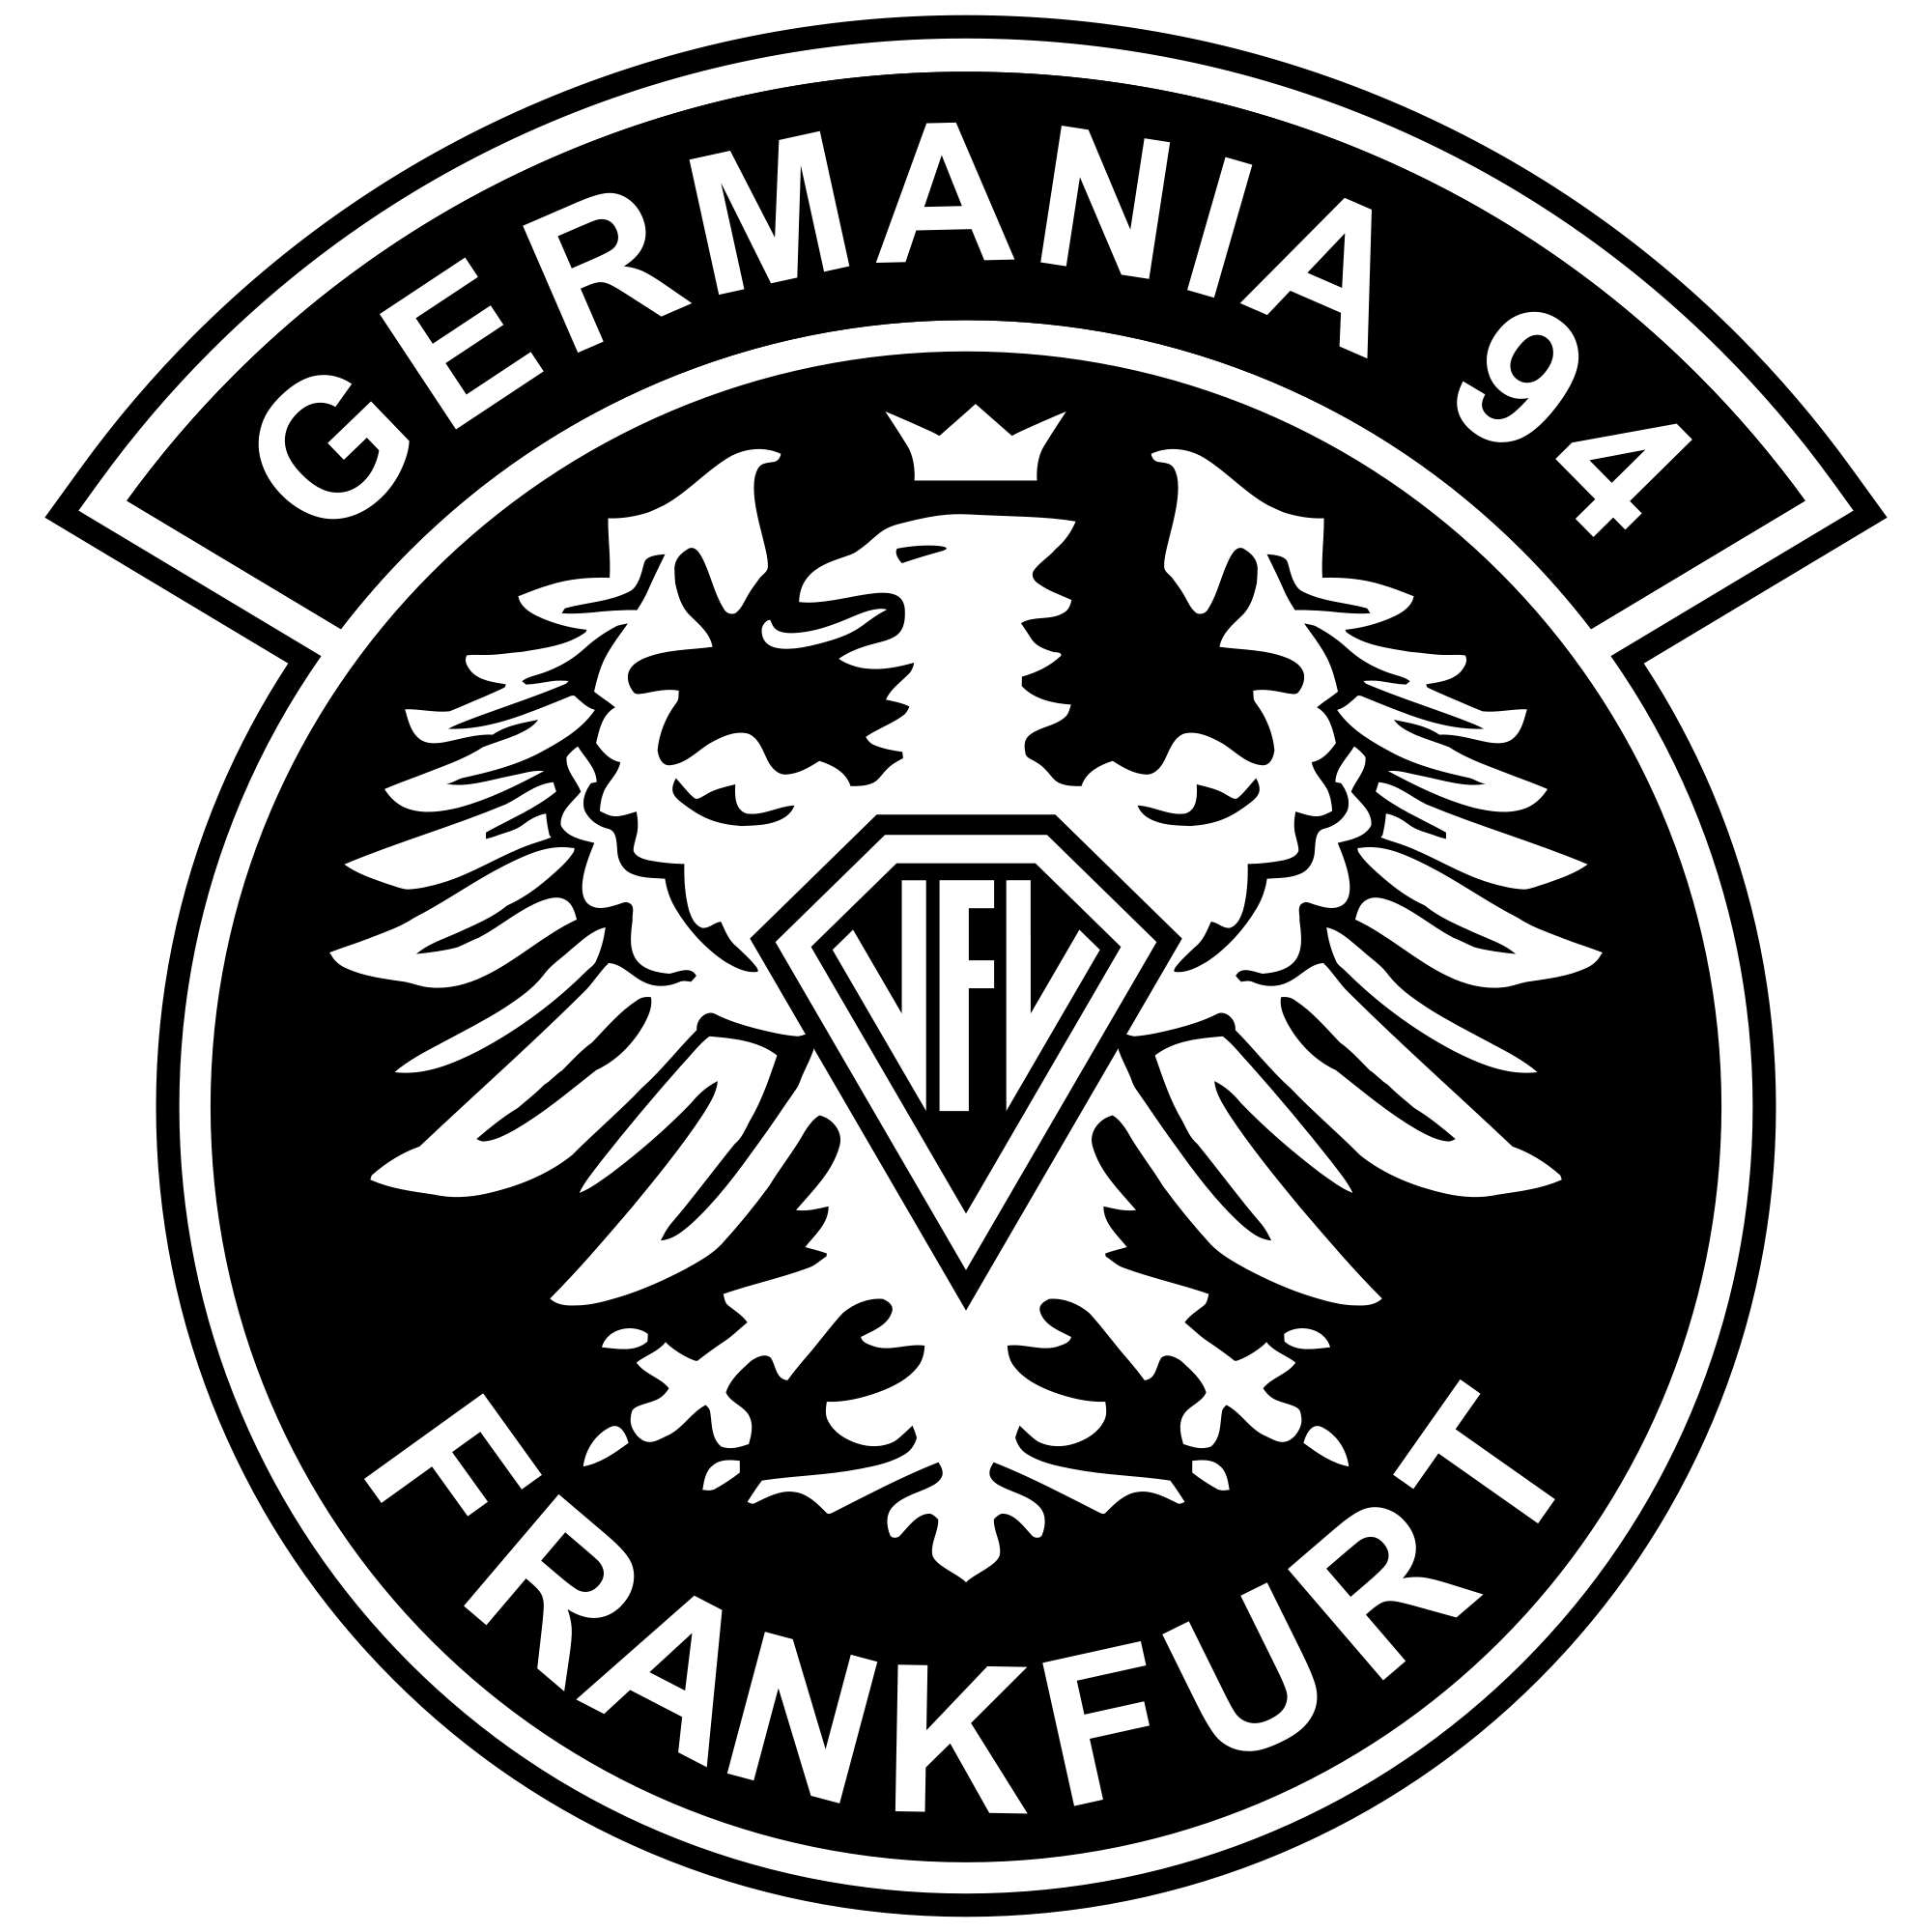 VfL Germania 94